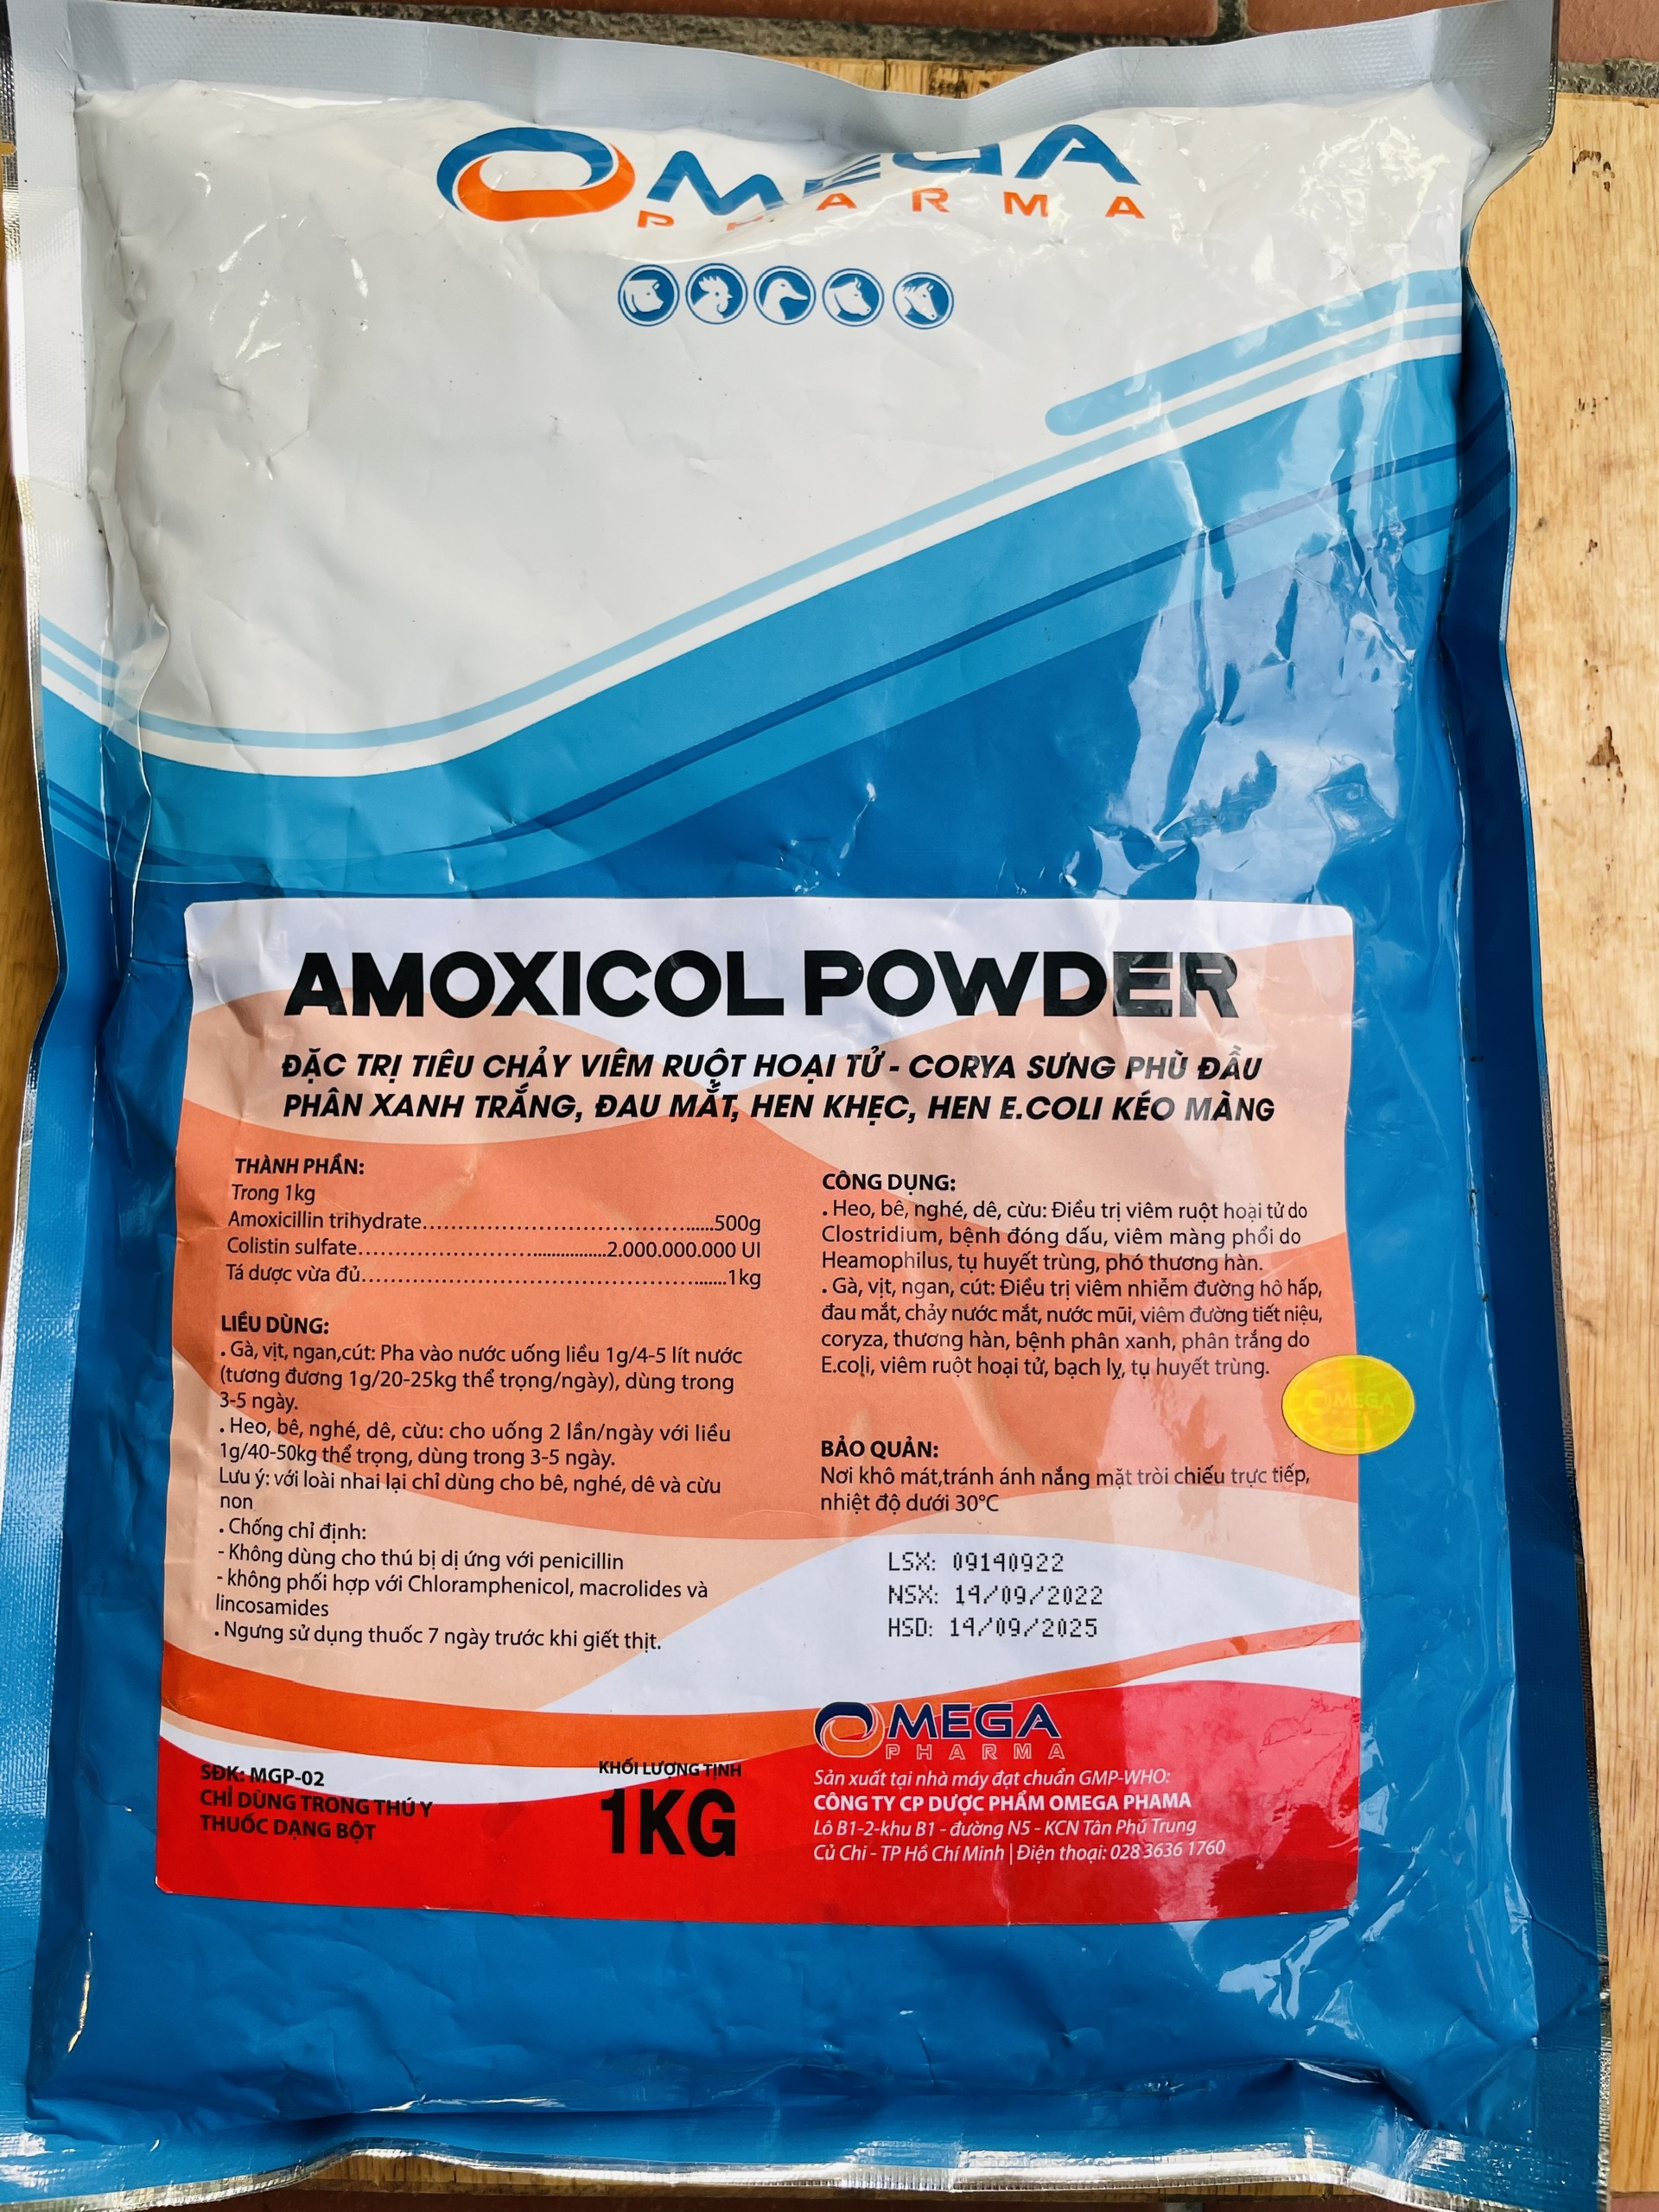 Amoxicol 50% PowderAmoxivet50% Powdertieu chay, phan xanh phan trang